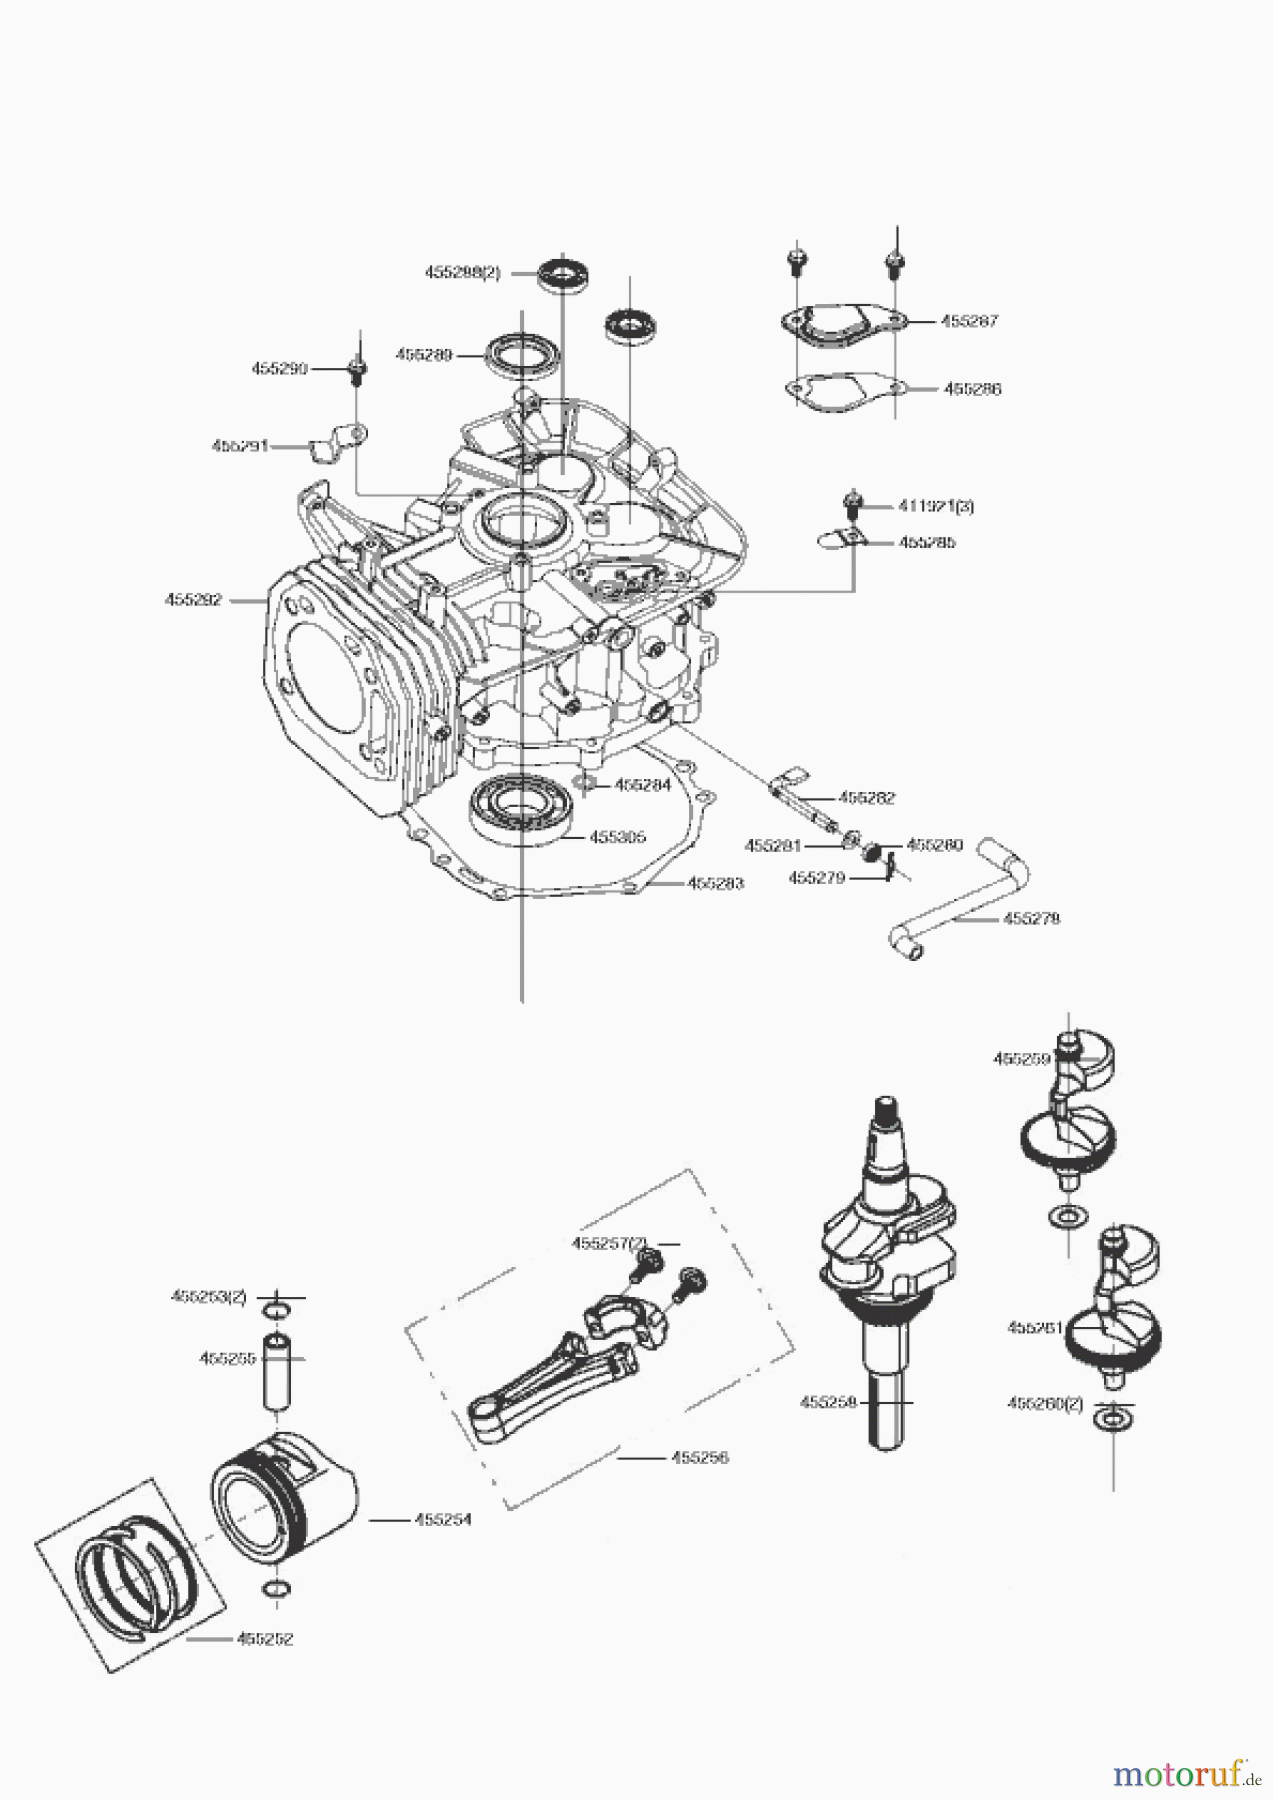  AL-KO Gartentechnik Benzinmotoren B-MOTOR PRO 450 LC1P92F-1 R9005  07/2021 - 11/2021 Seite 2